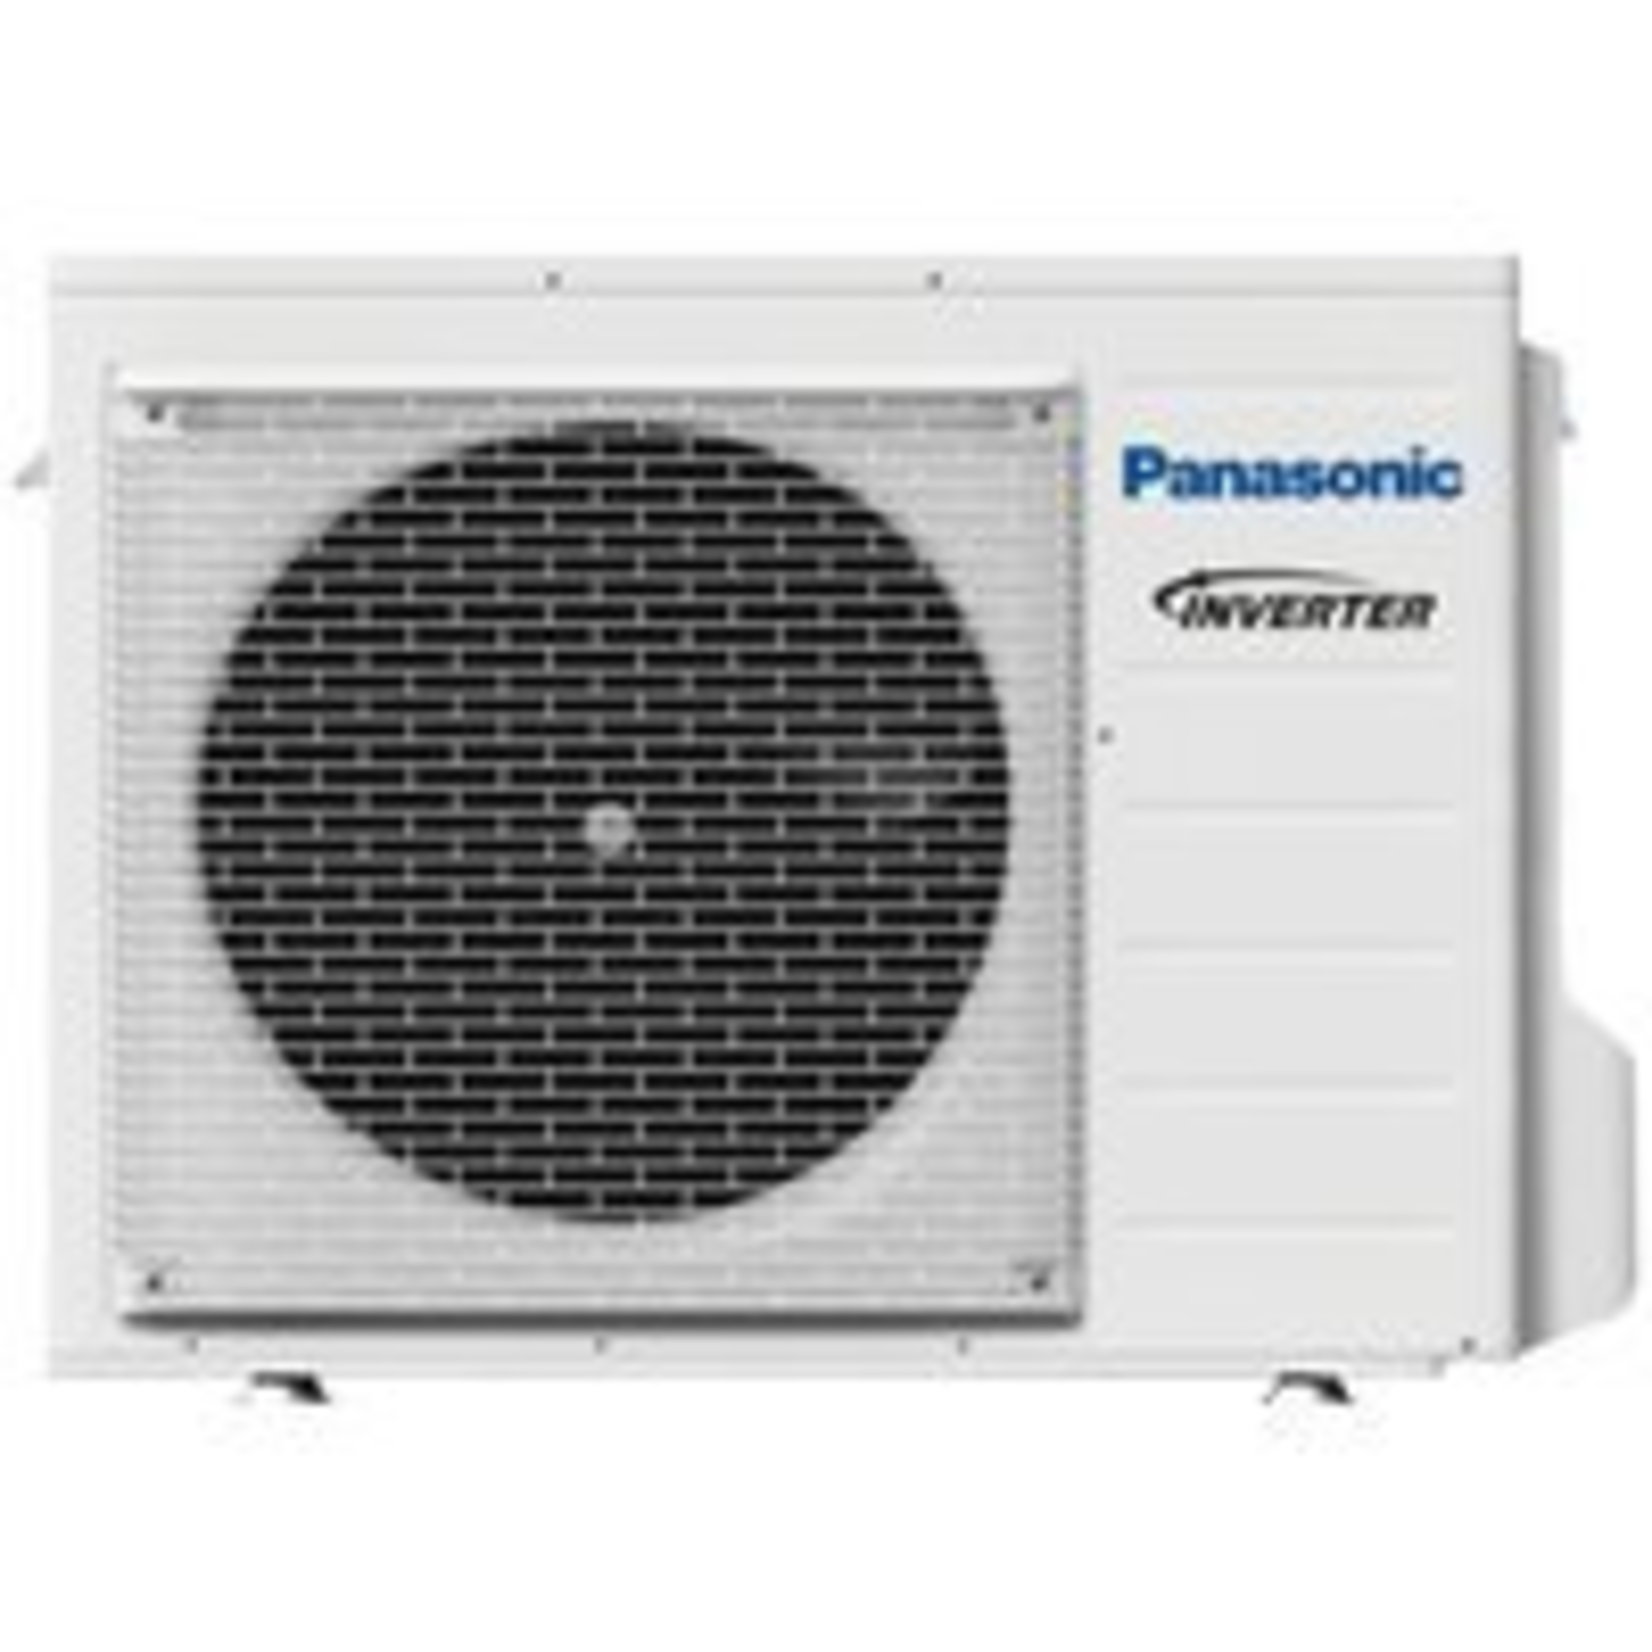 Panasonic Klimaanlage Single-Split Set mit Rastermaß-Kassette Baureihe UB4  6 kW